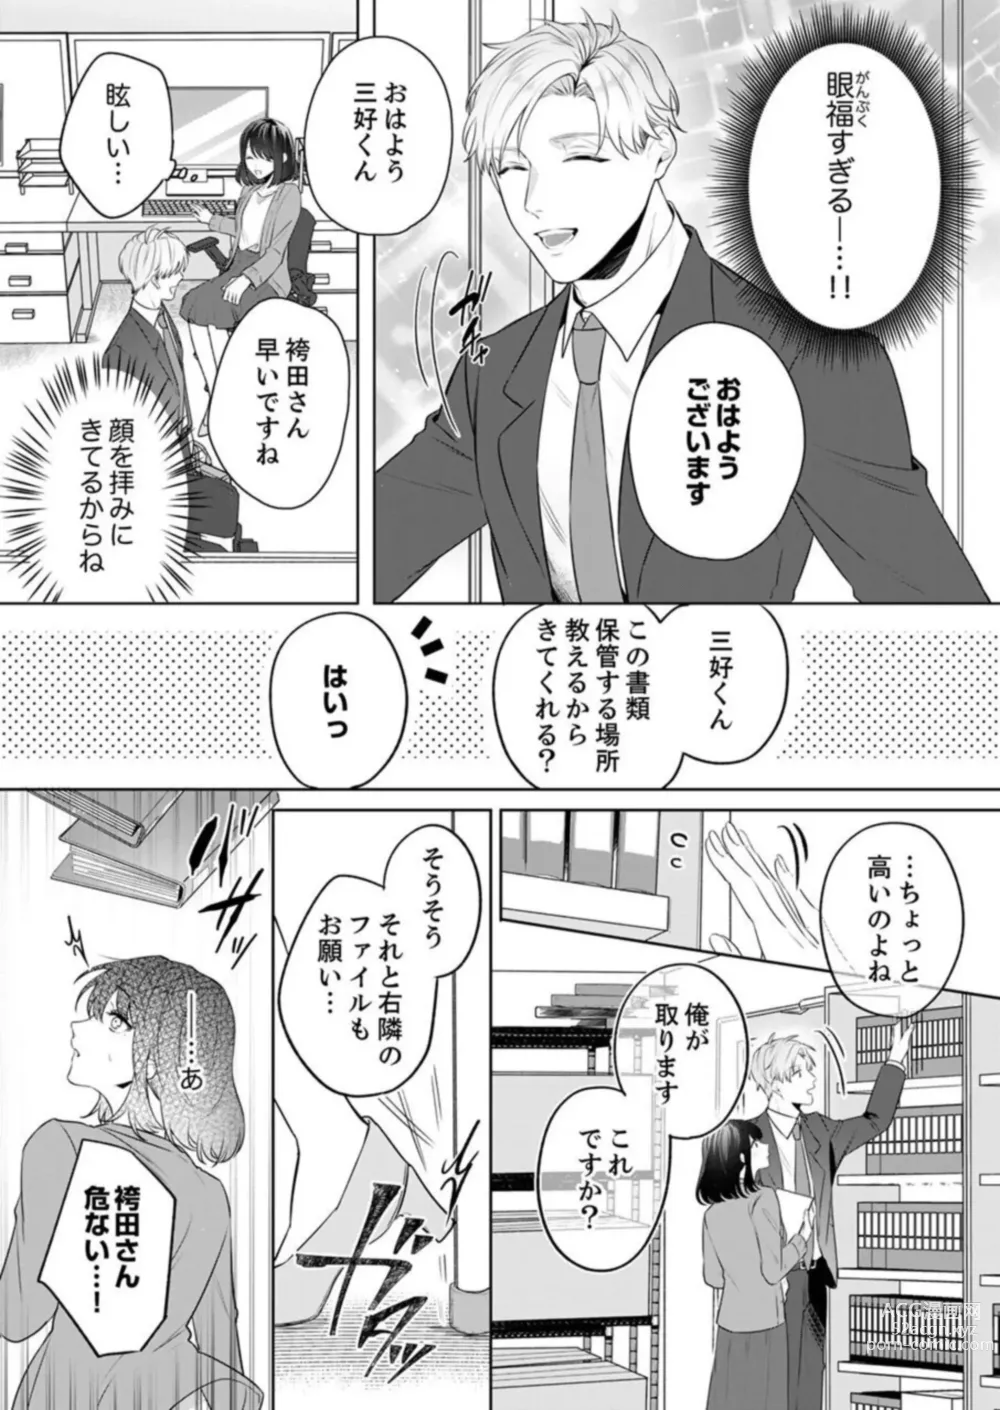 Page 9 of manga Oshi ni no Buka no Koshikudake Kisu 〜 Desuku no ue de Torotoro ni Nurete 1-2